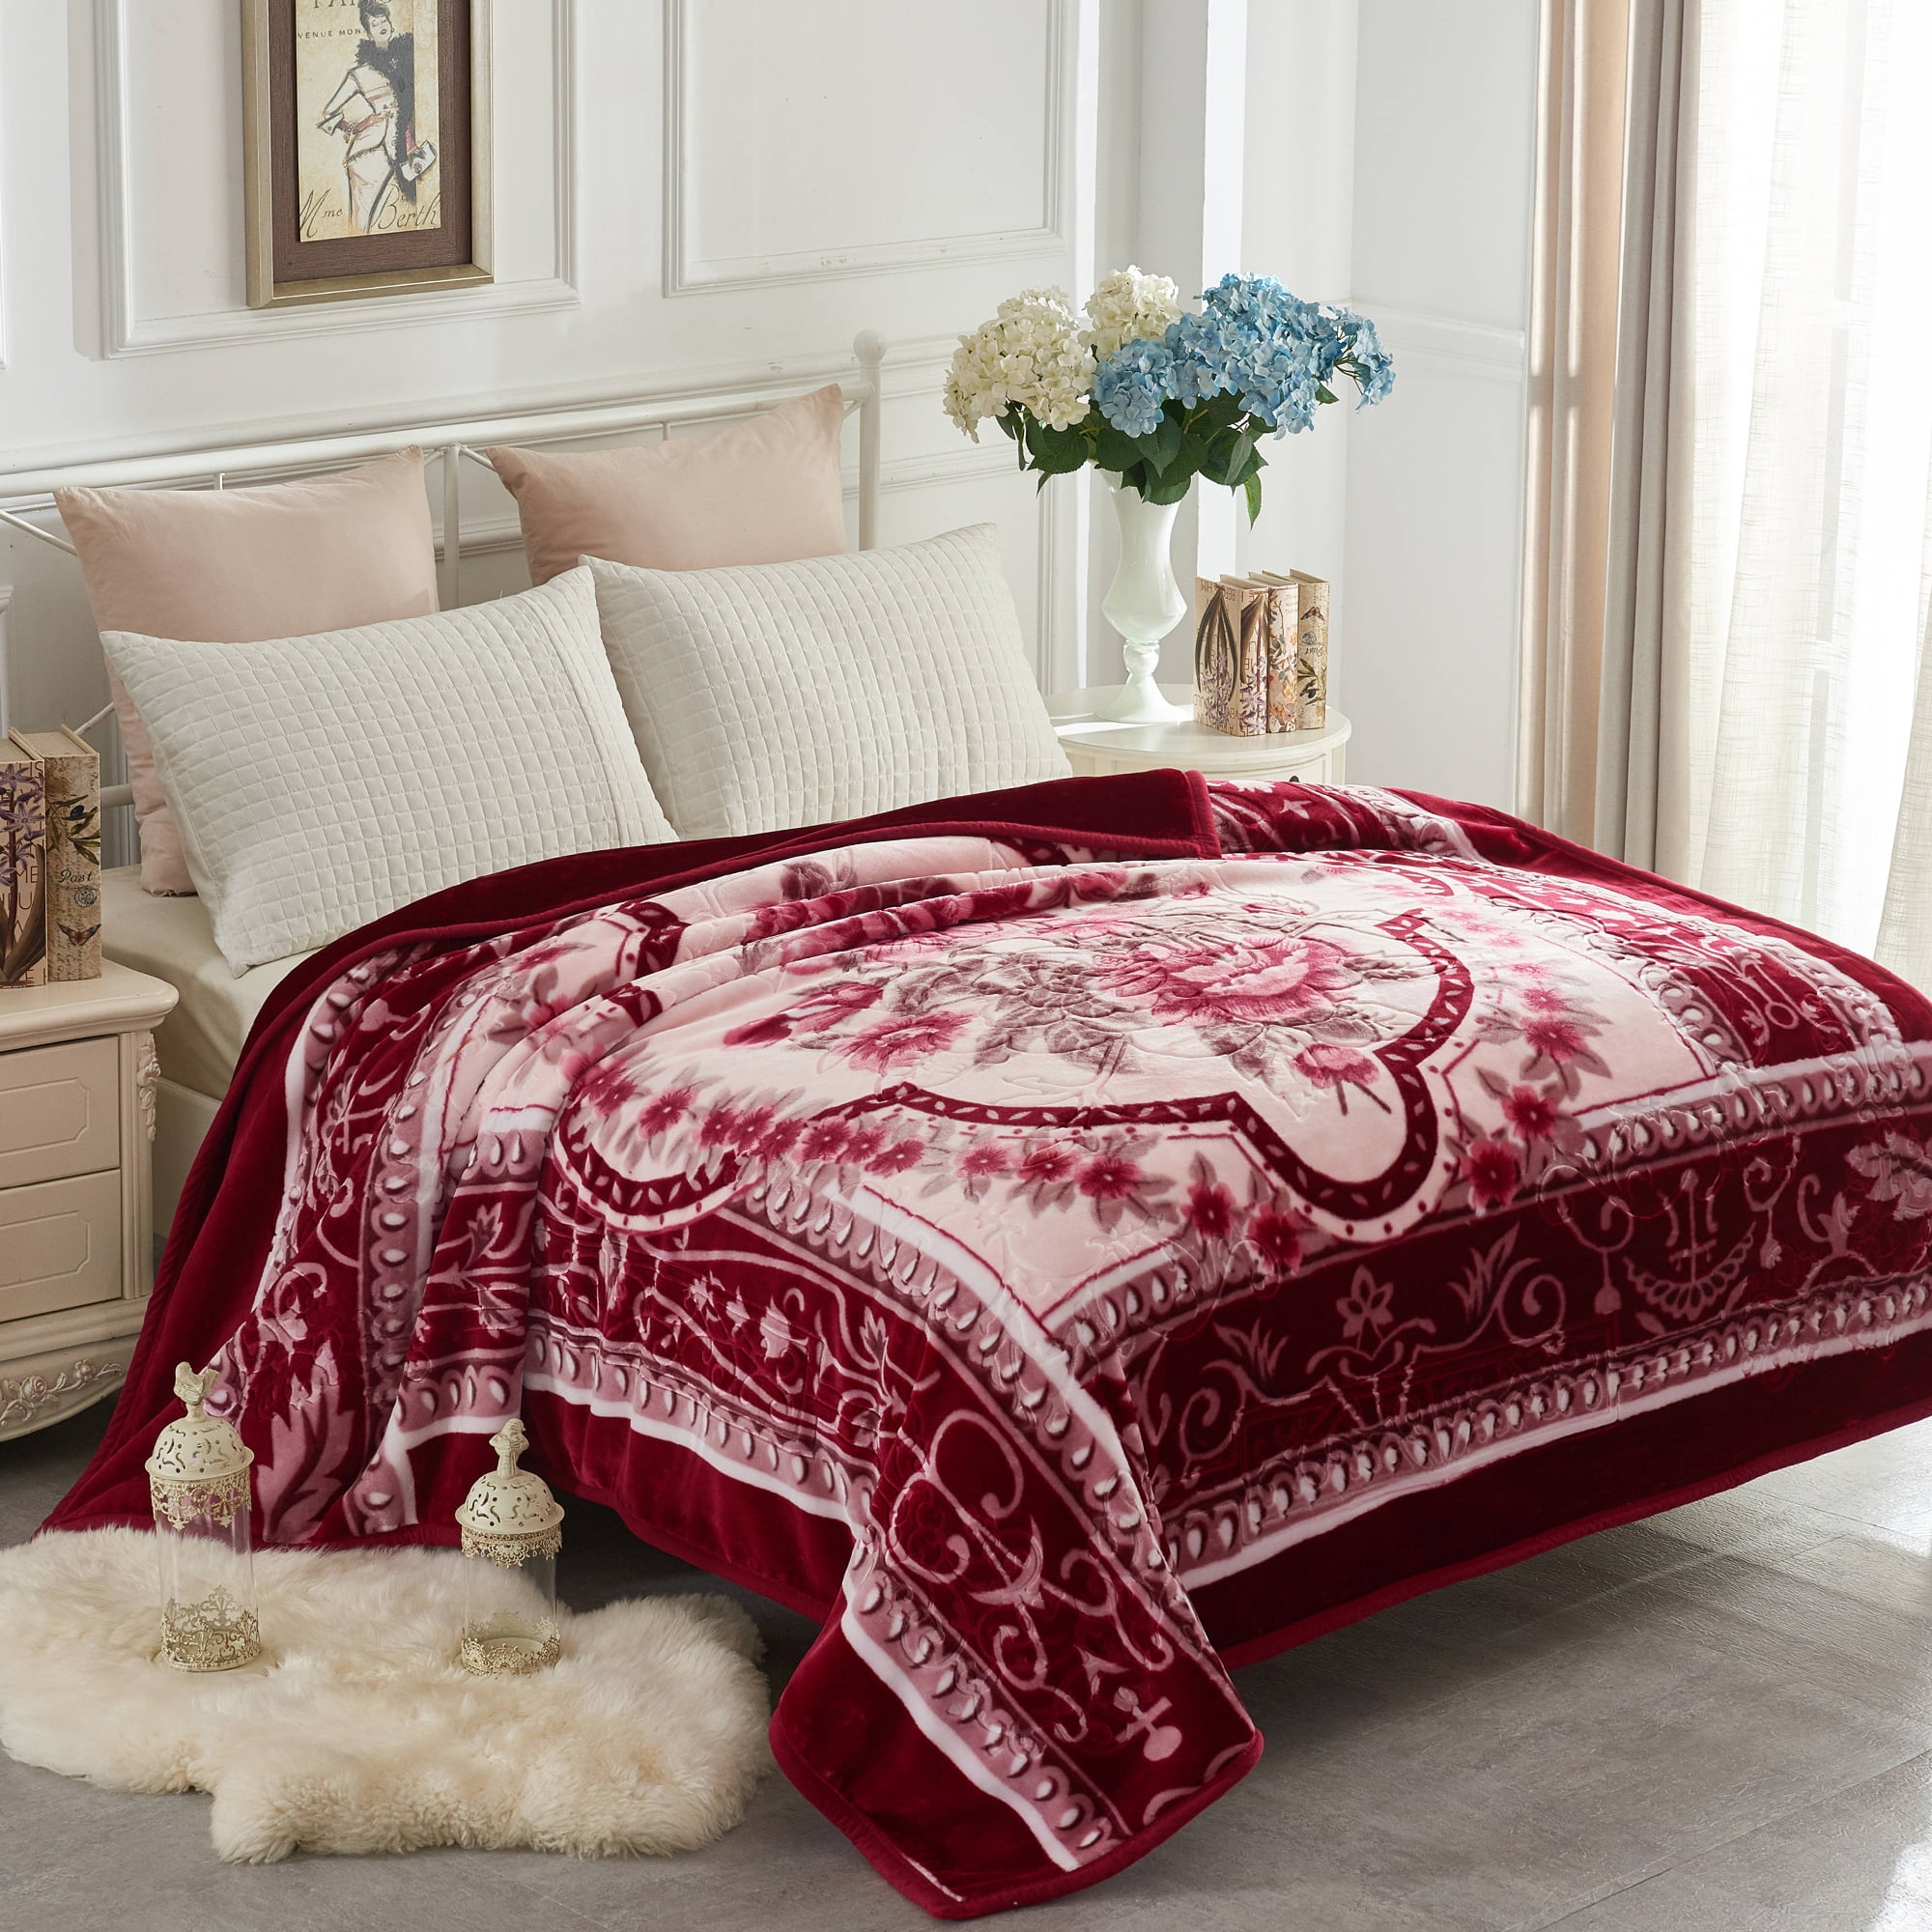 JML Queen Fleece Bed Blanket For Winter,520GSM Polyester Soft Fleece Blanket,77x87  